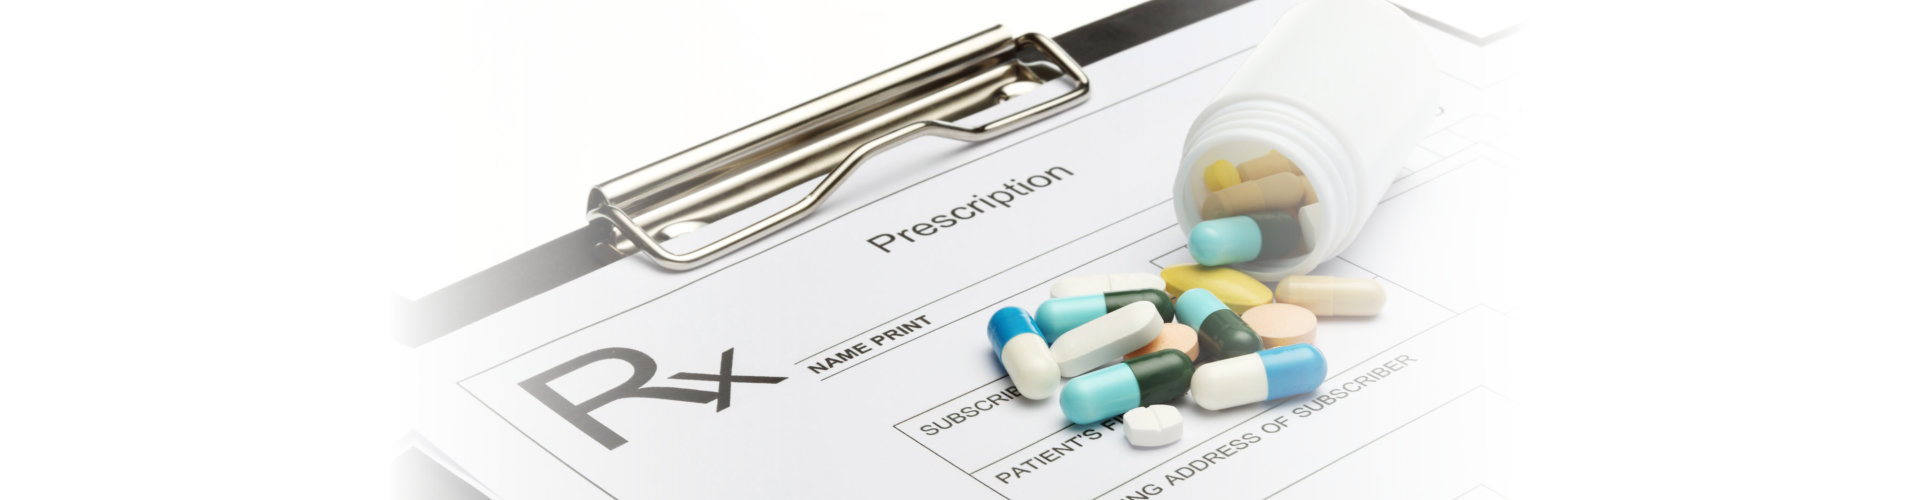 prescriptions with medicines on top